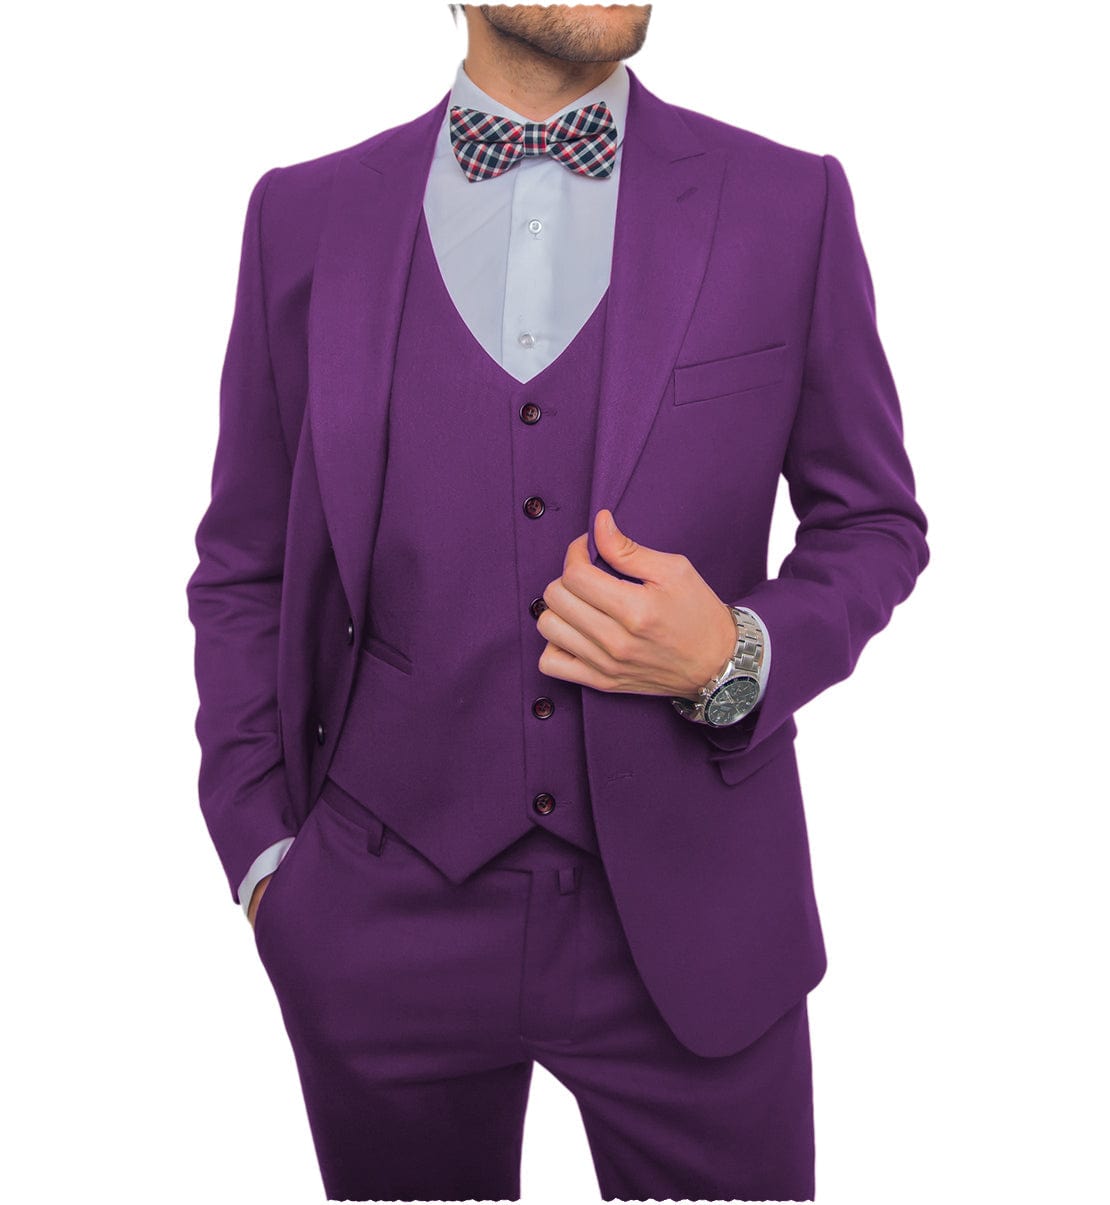 ceehuteey Business Flat 3 Pieces Men's Suit Blazer (Blazer+vest+Pants)